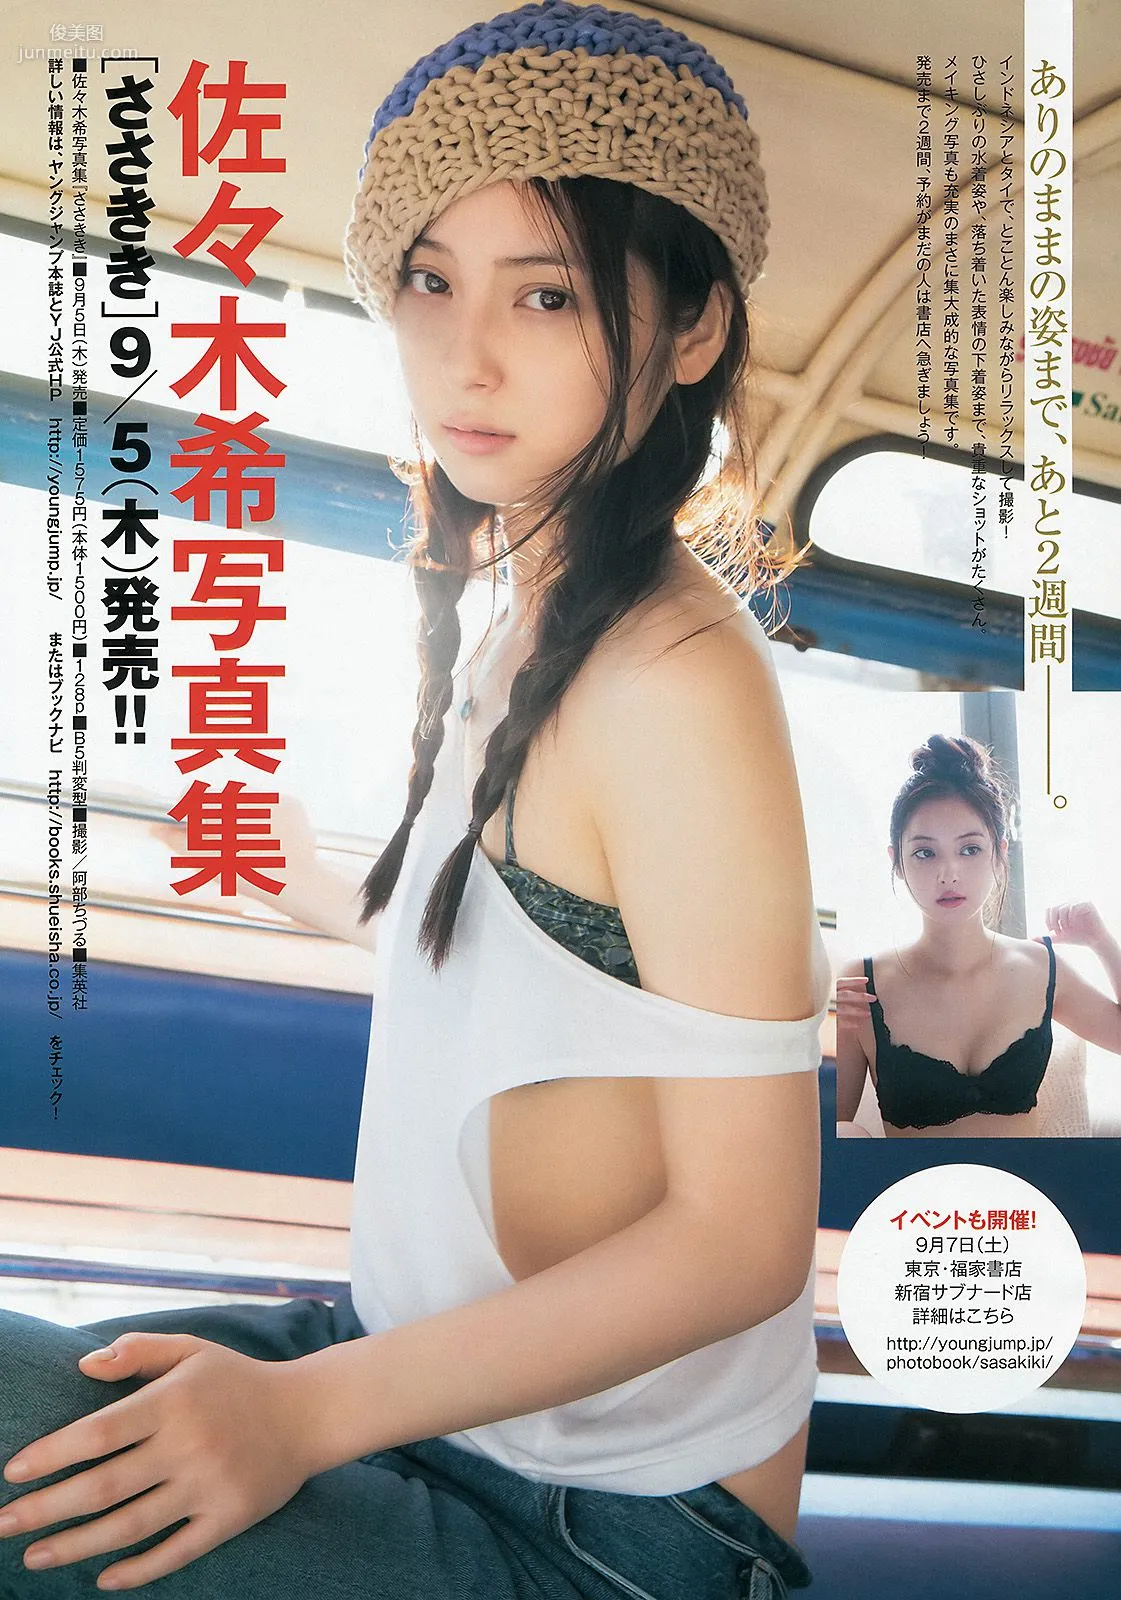 鞘師里保 たわコレ2013夏 [Weekly Young Jump] 2013年No.38 写真杂志8